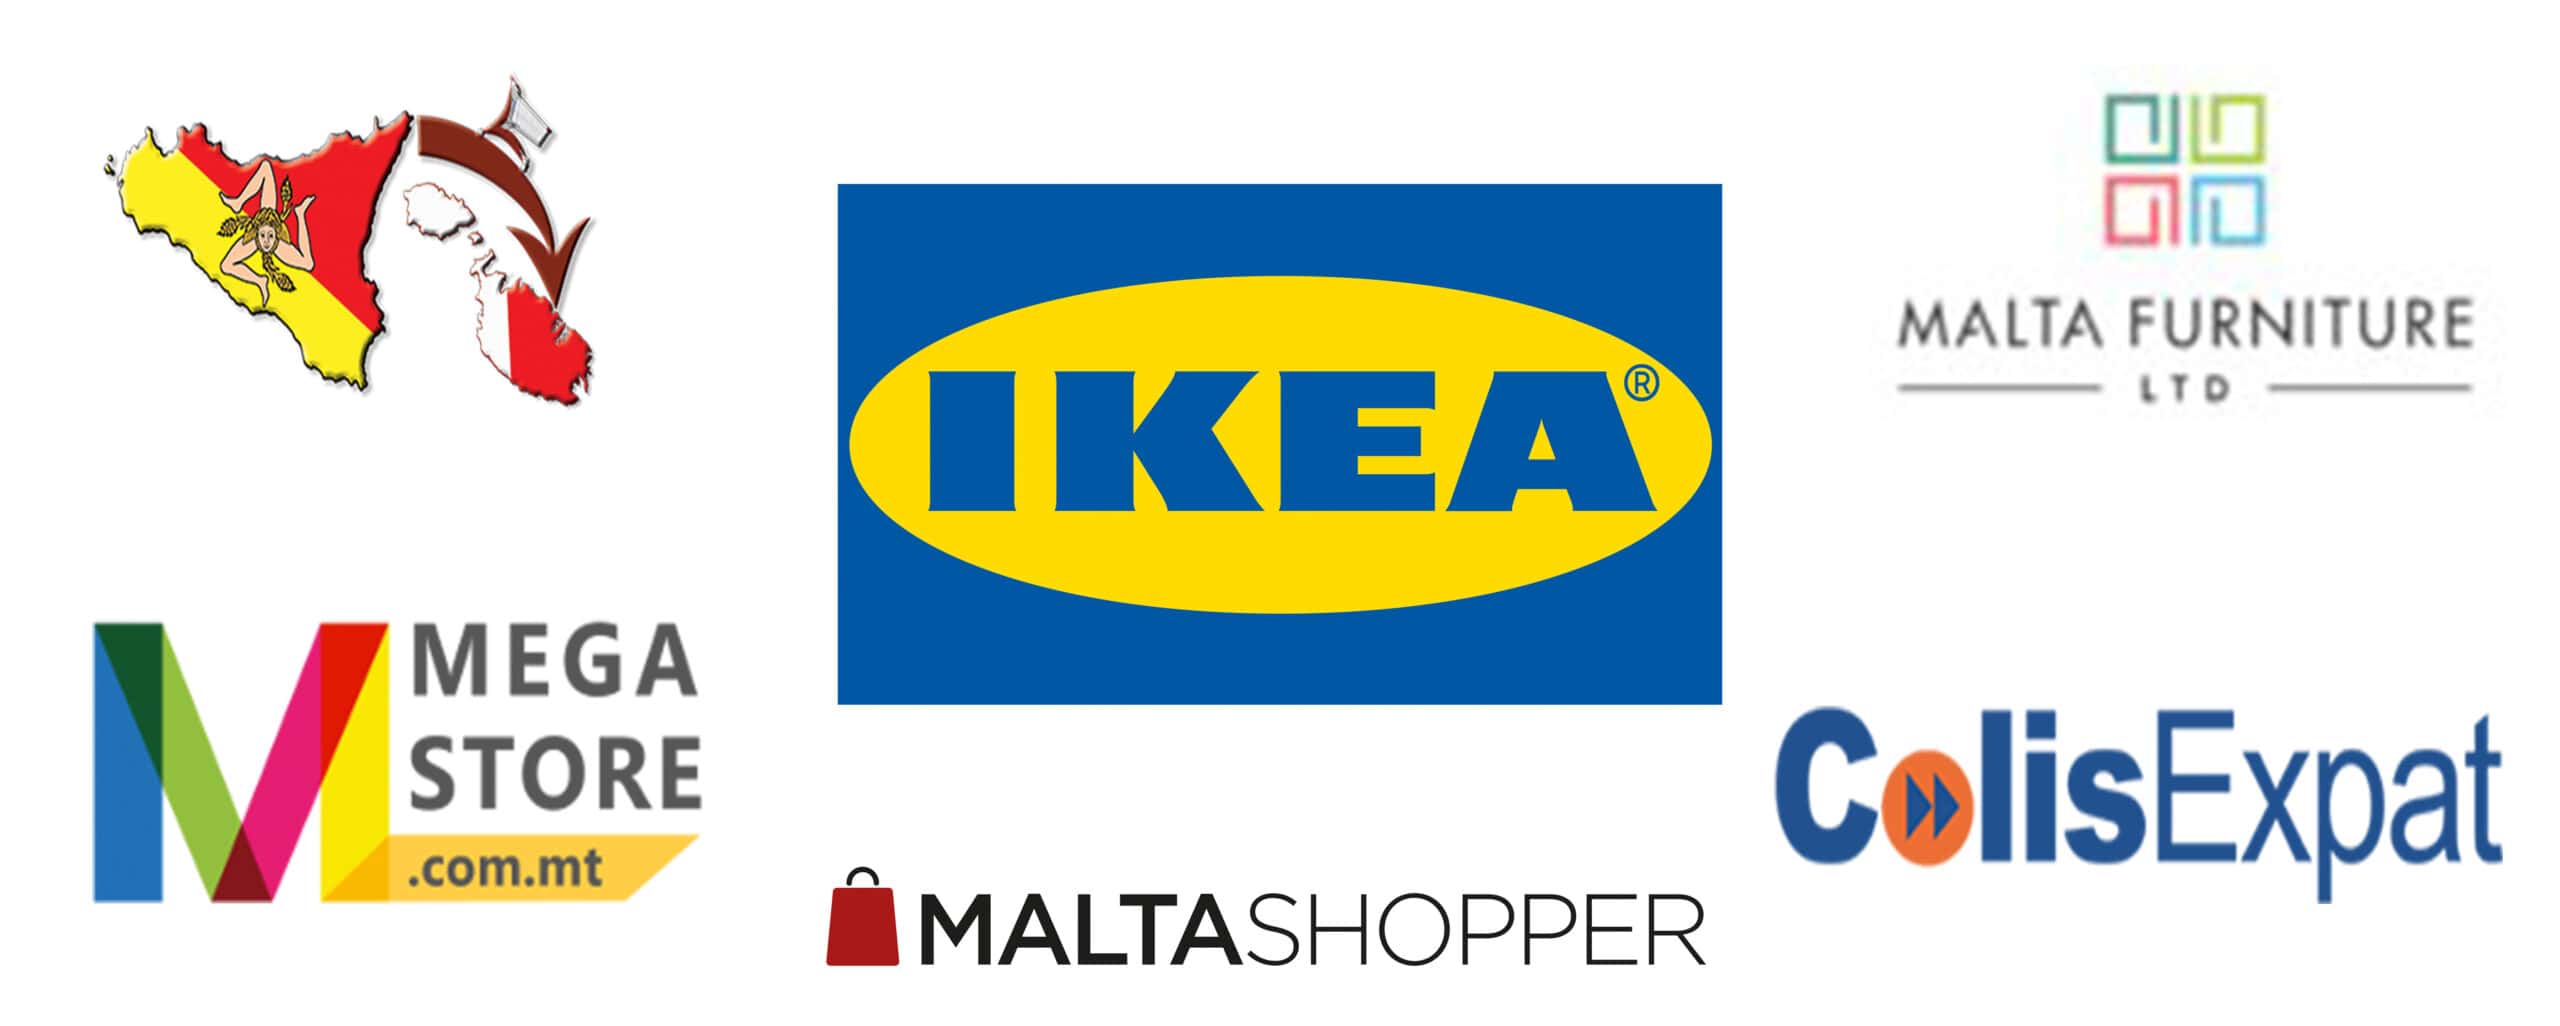 Ikea to Malta